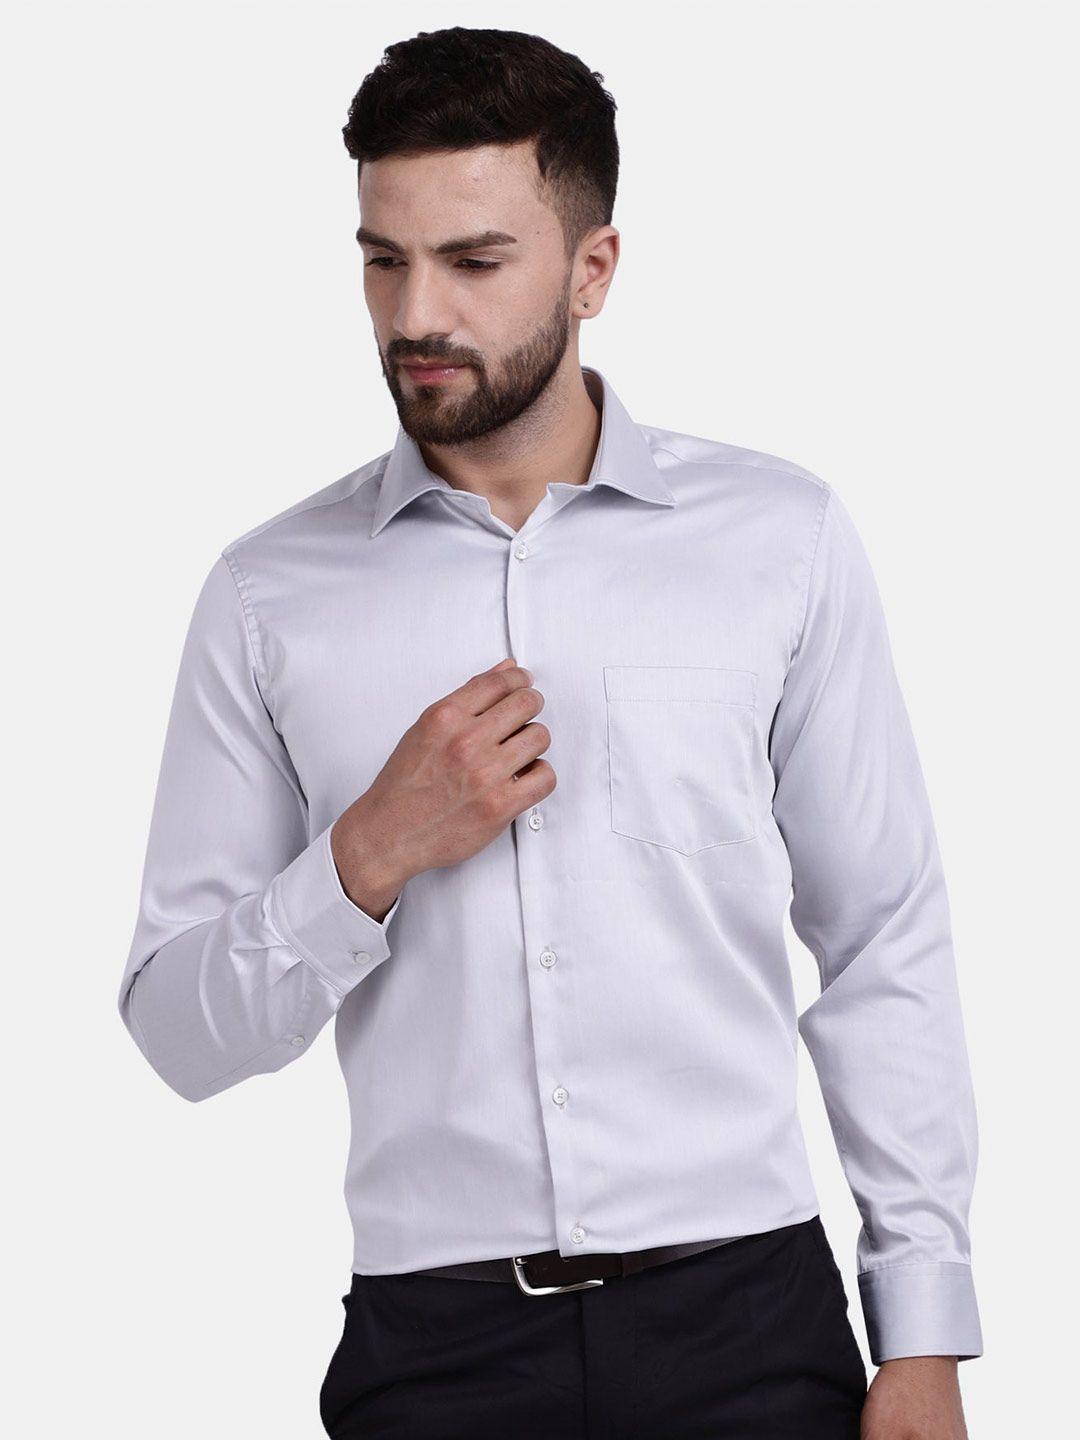 cotstyle premium cotton formal shirt